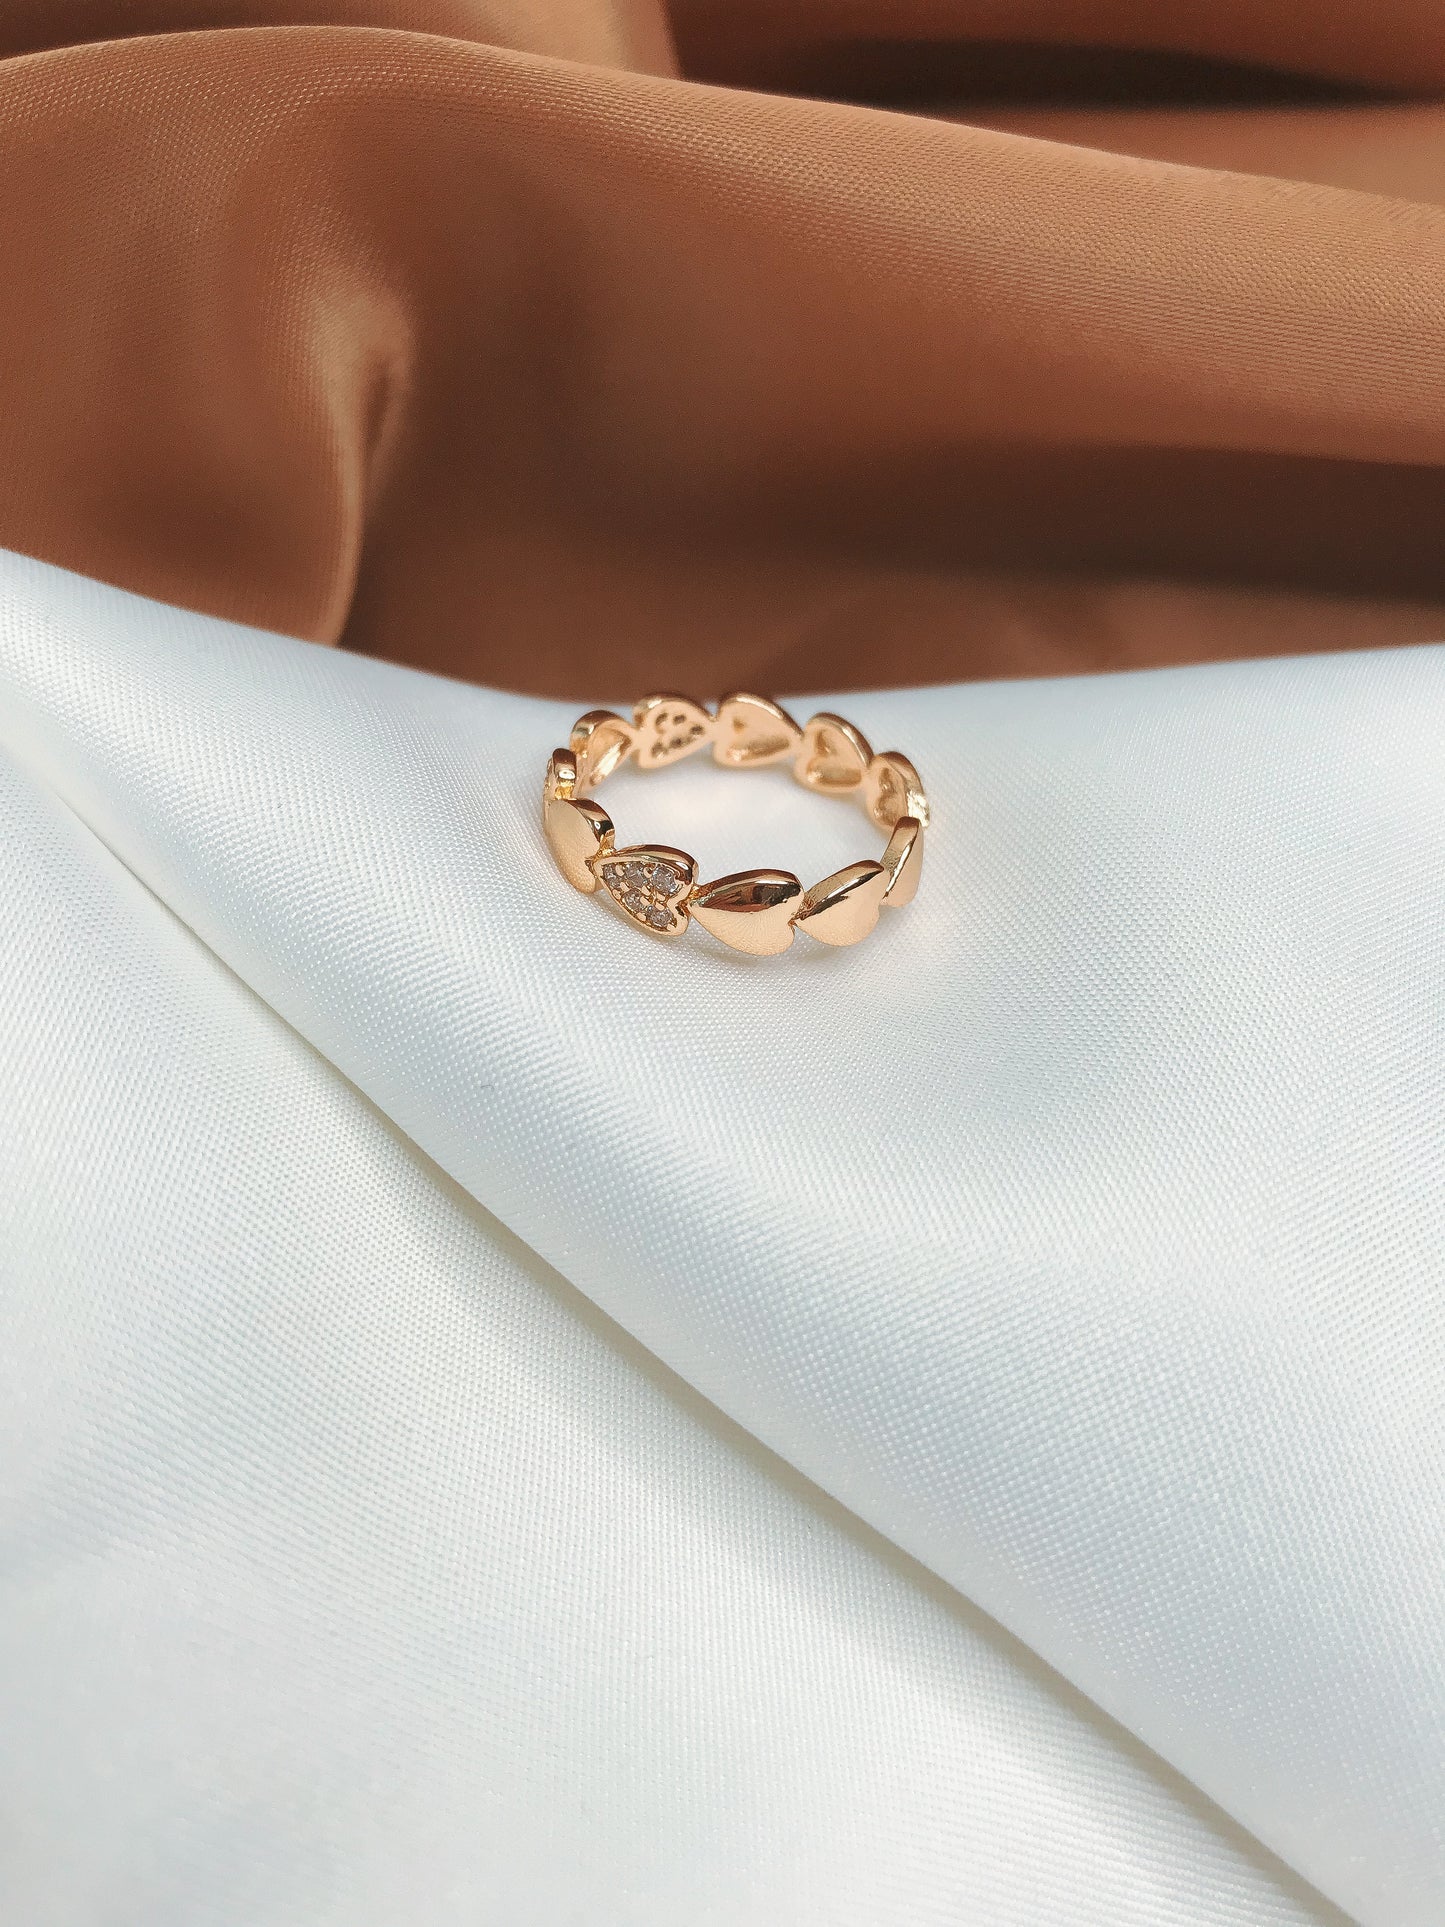 anillo dorado acero inoxidable diseño de corazones con aplicaciones en zirconia